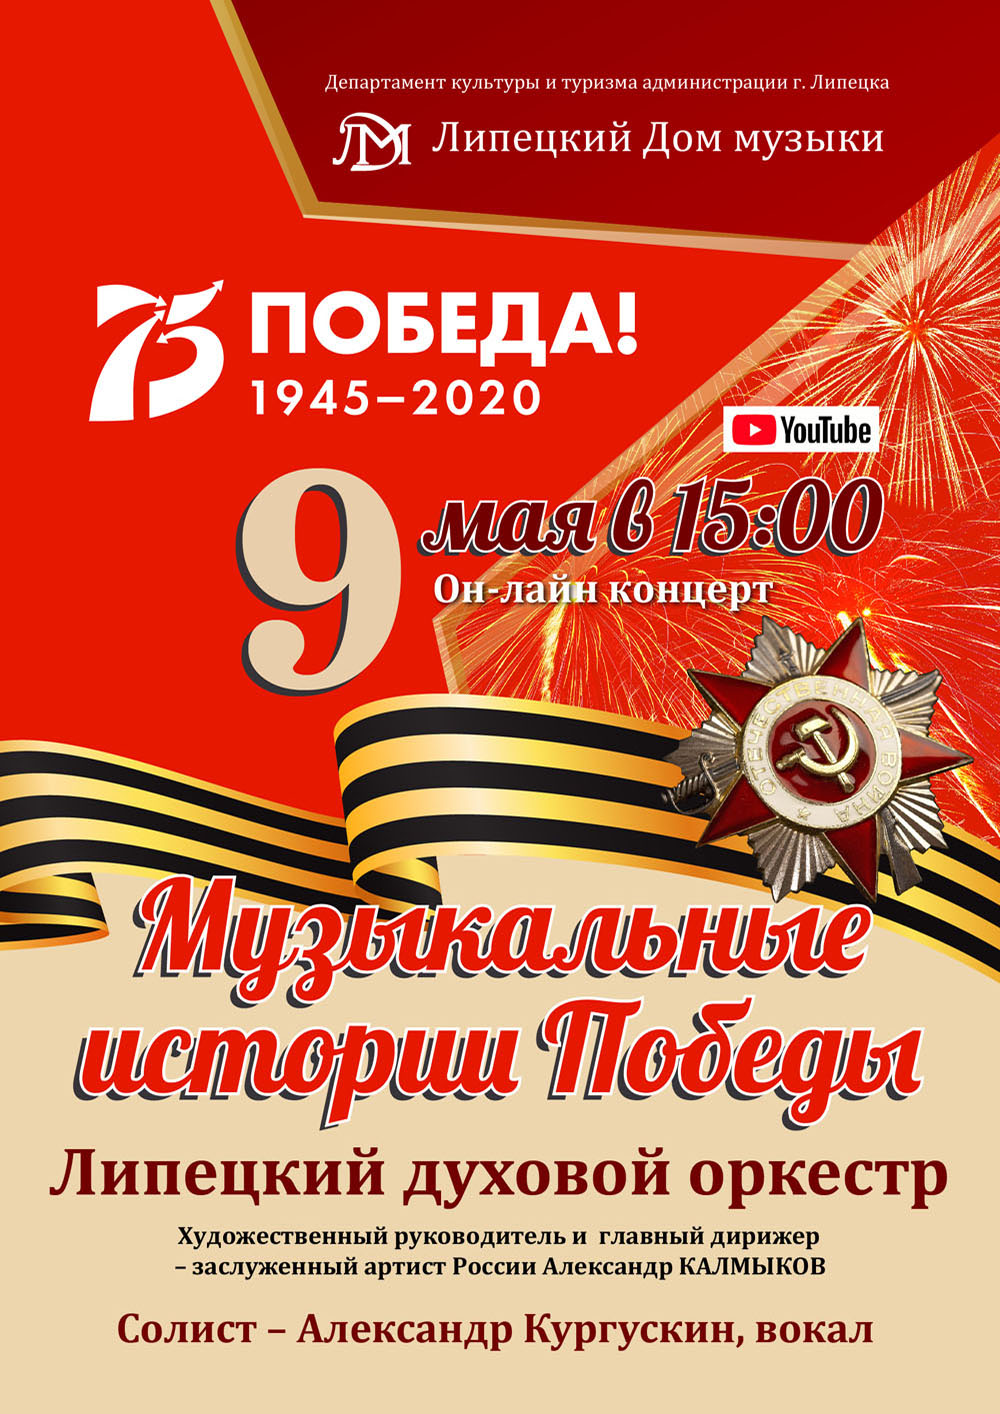 Онлайн-концерт: Музыкальные истории Победы (09.05.2020 в 15:00)